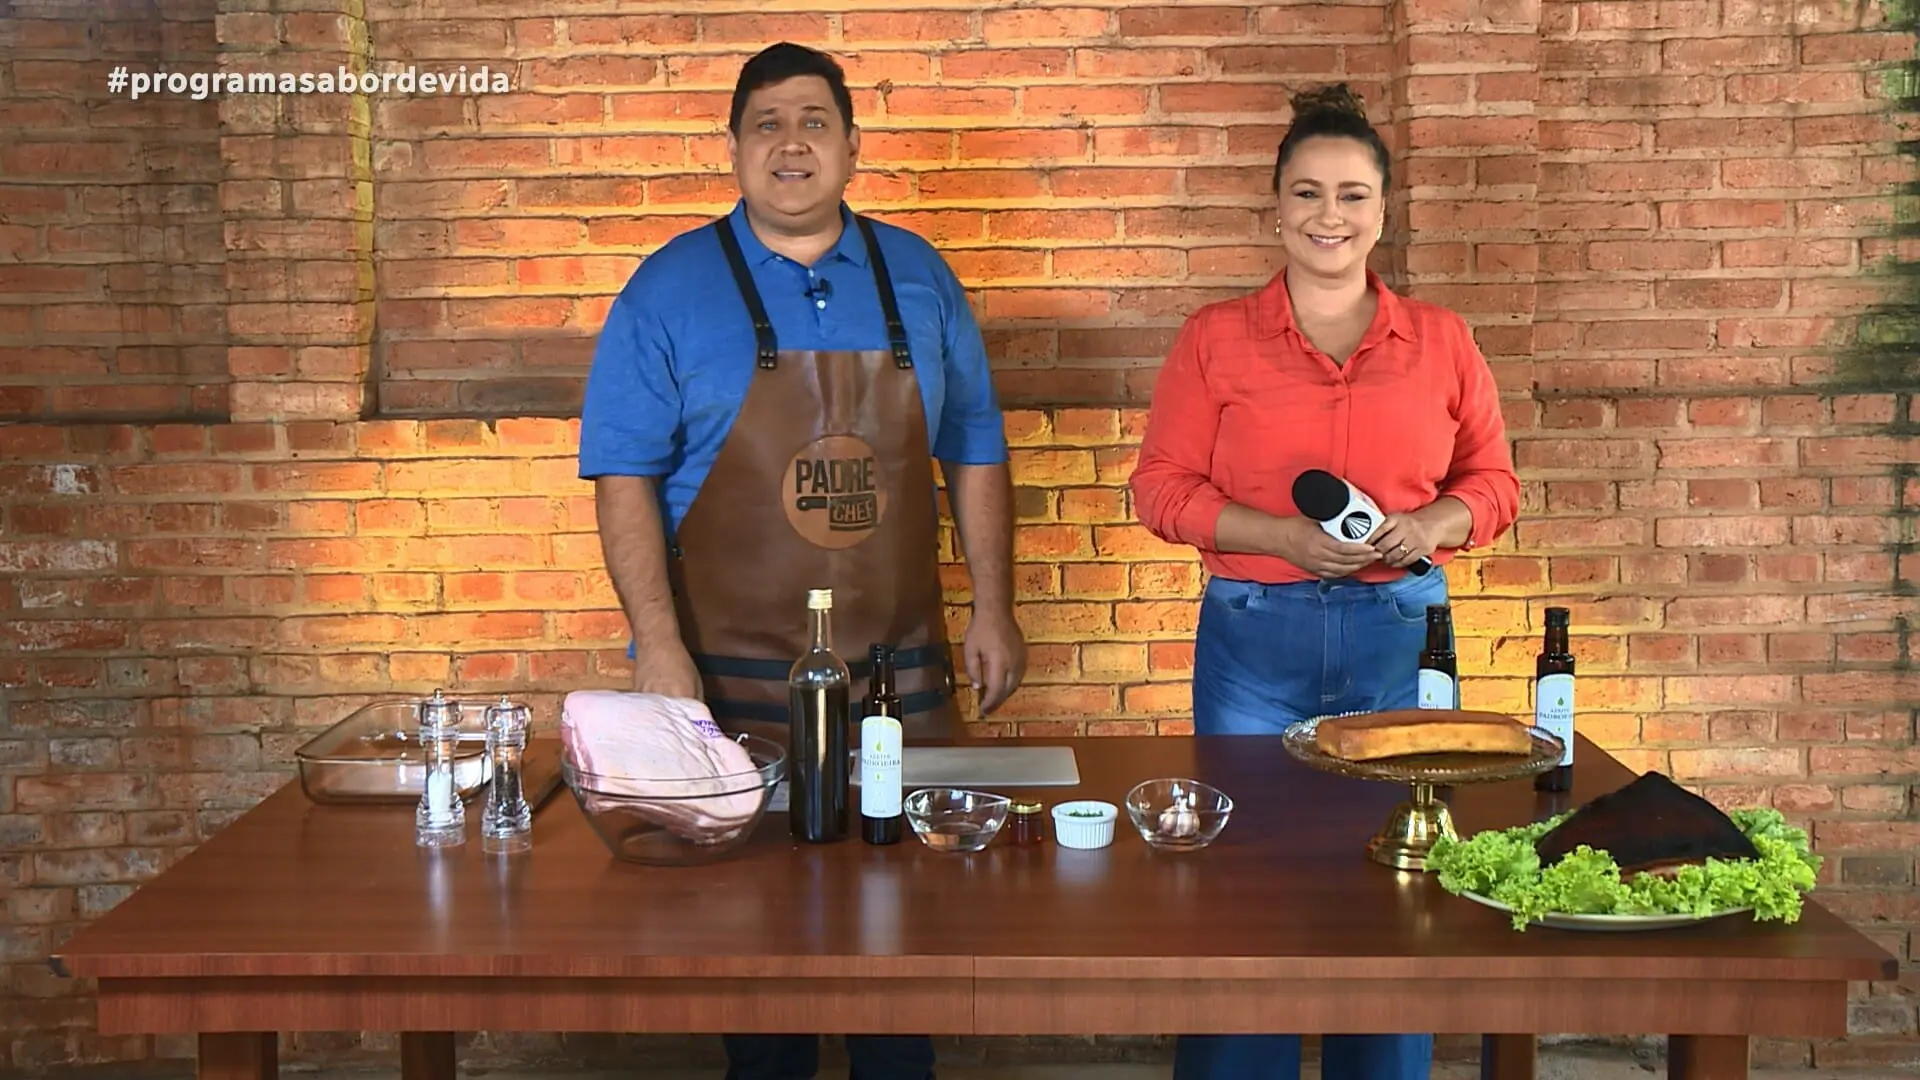 Padre Chef, Evandro Zanardo e Bianca Láua no programa Sabor de Vida, da TV Aparecida